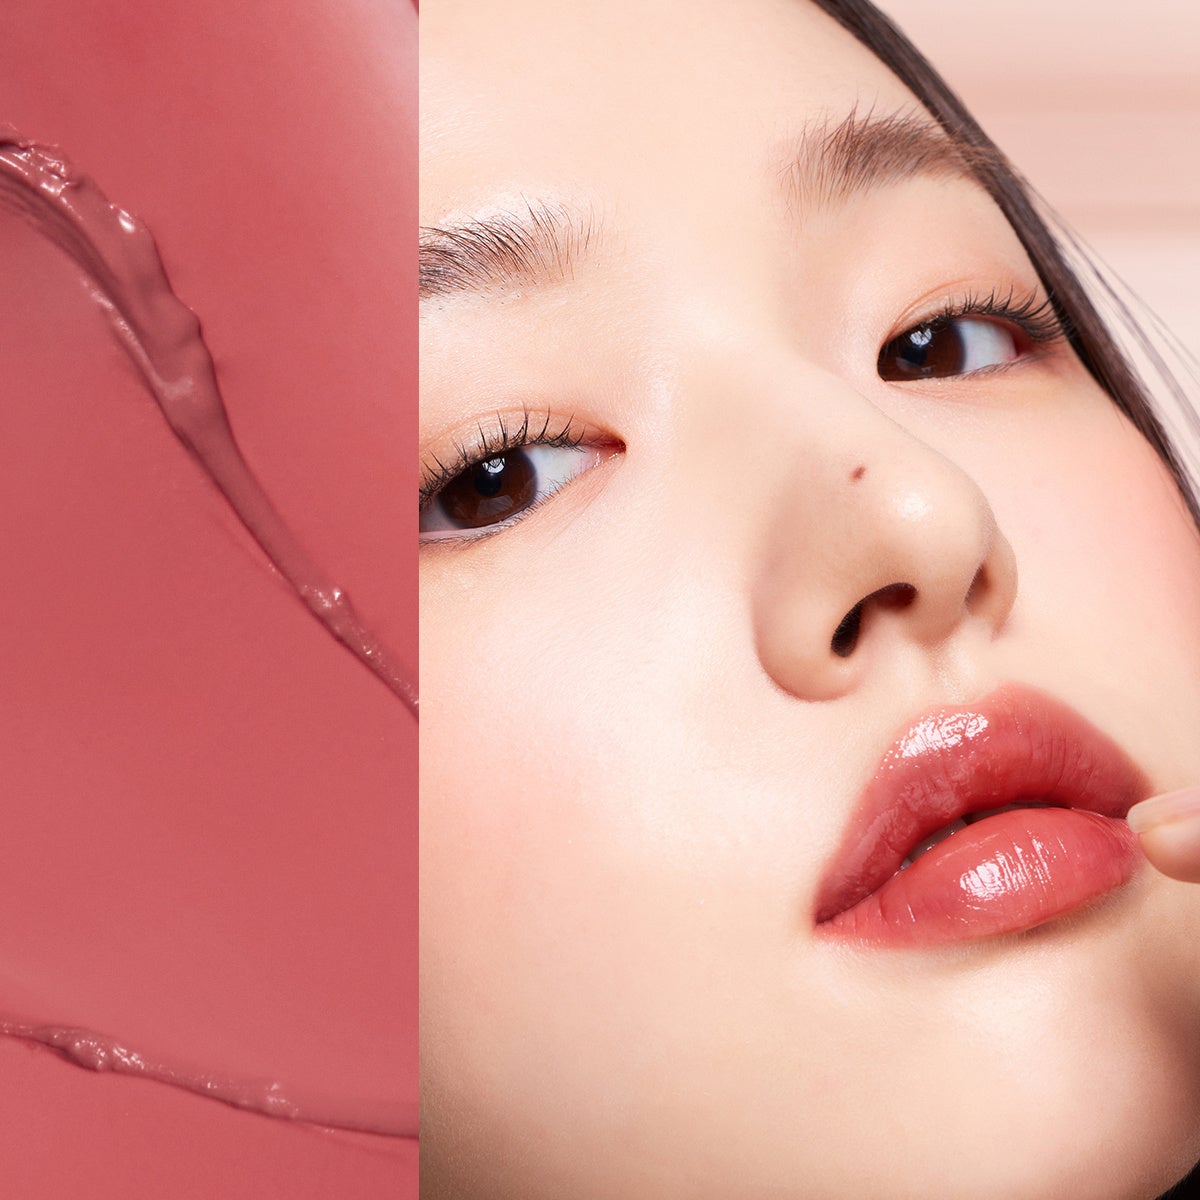 ジェンダーニュートラルブランド「Laka（ラカ）」から、華やぐカラーと艶やかな光沢感を唇に与える、ボンディンググロウリップスティックが日本店頭発売開始のサブ画像3